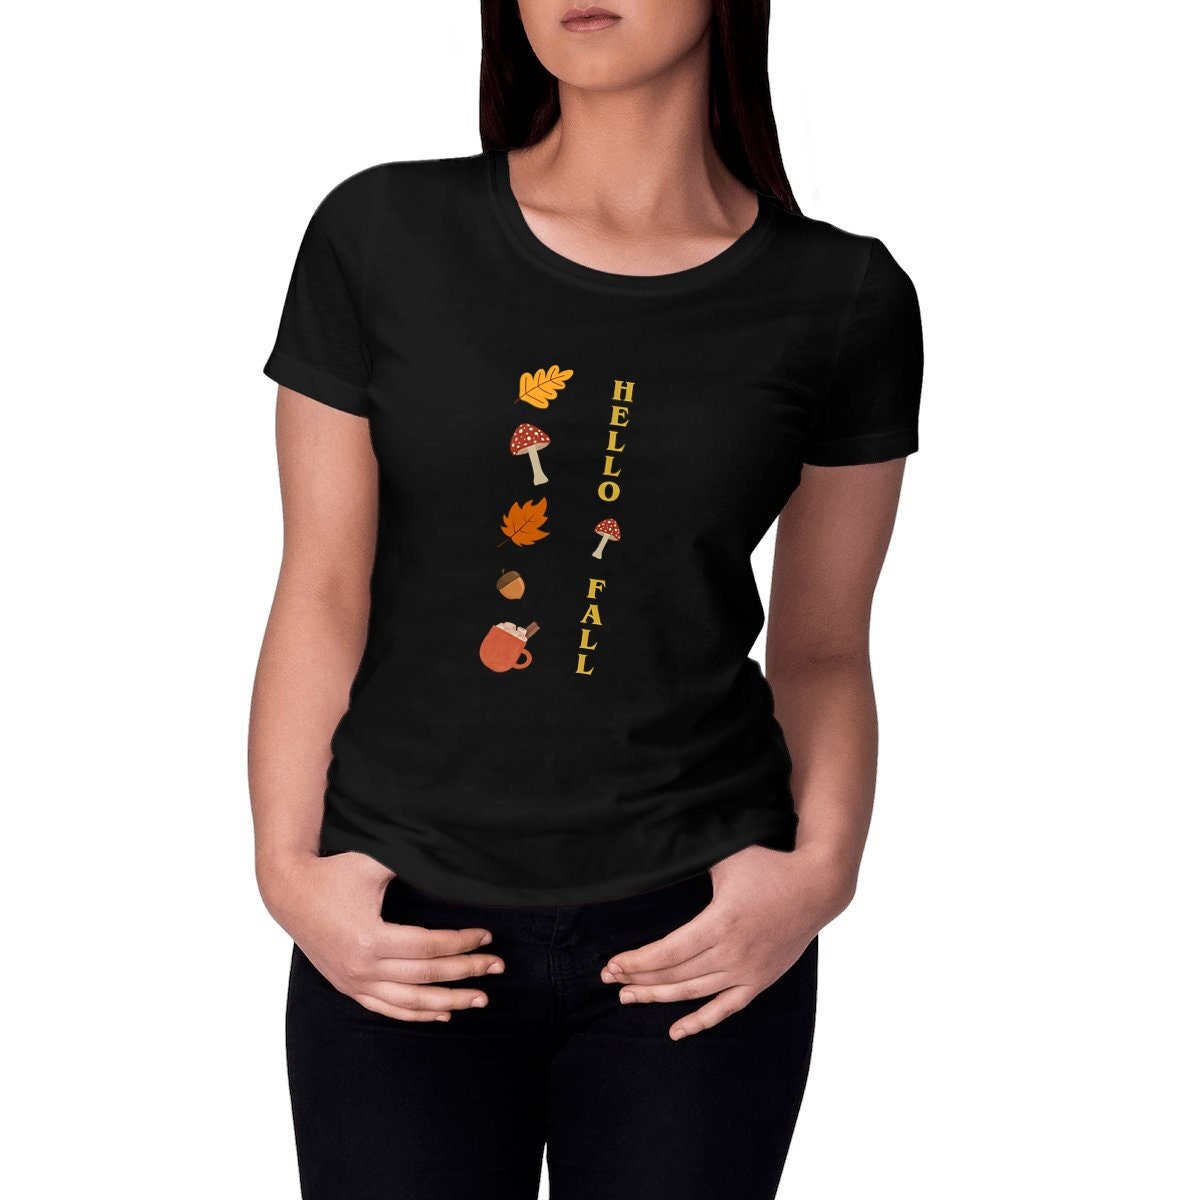 Coussin for Sale avec l'œuvre « T-shirt magicien et champignon magique,  T-shirt magicien psychédélique, T-shirt art psychédélique, cadeaux pour  hommes, cadeaux pour femmes » de l'artiste DeepikaSingh